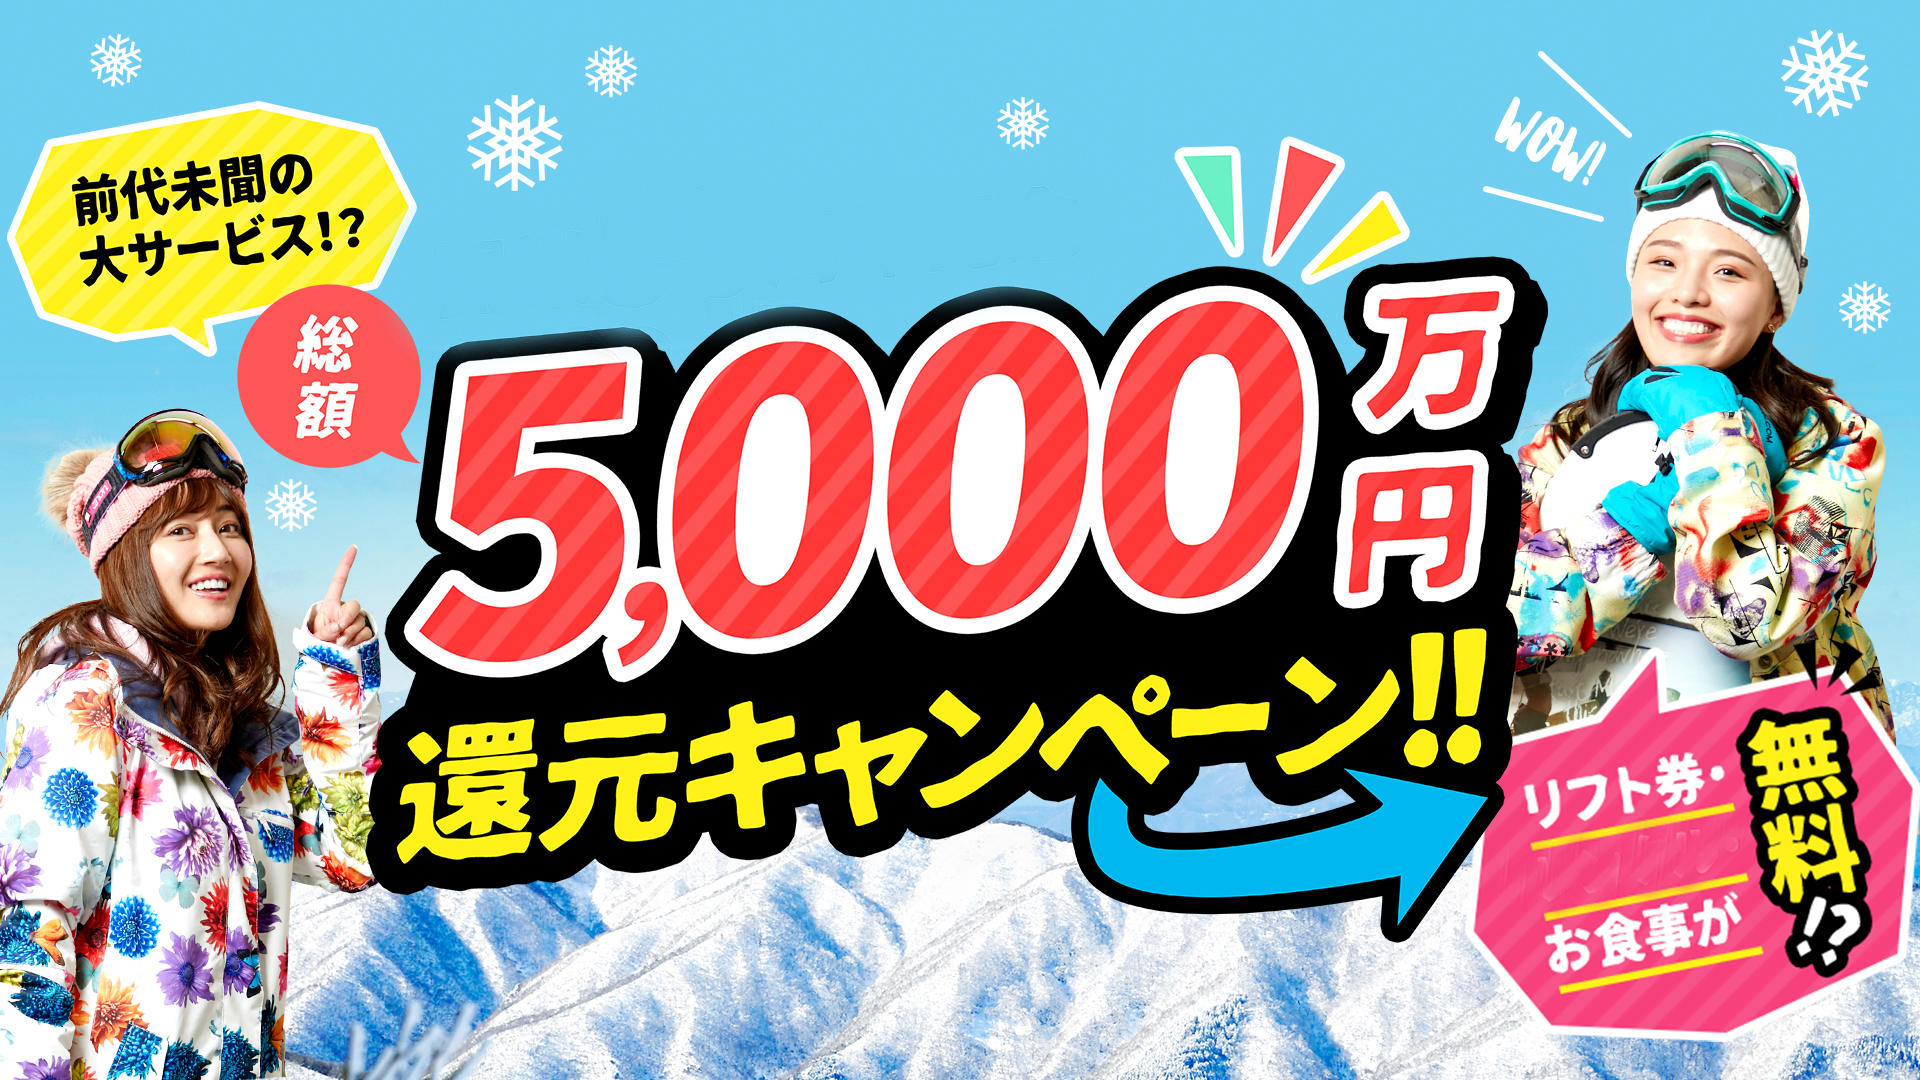 １月２５日（水）「食事無料」！！ 総額「５０００万円」還元キャンペーン！！新着情報 | グランスノー奥伊吹